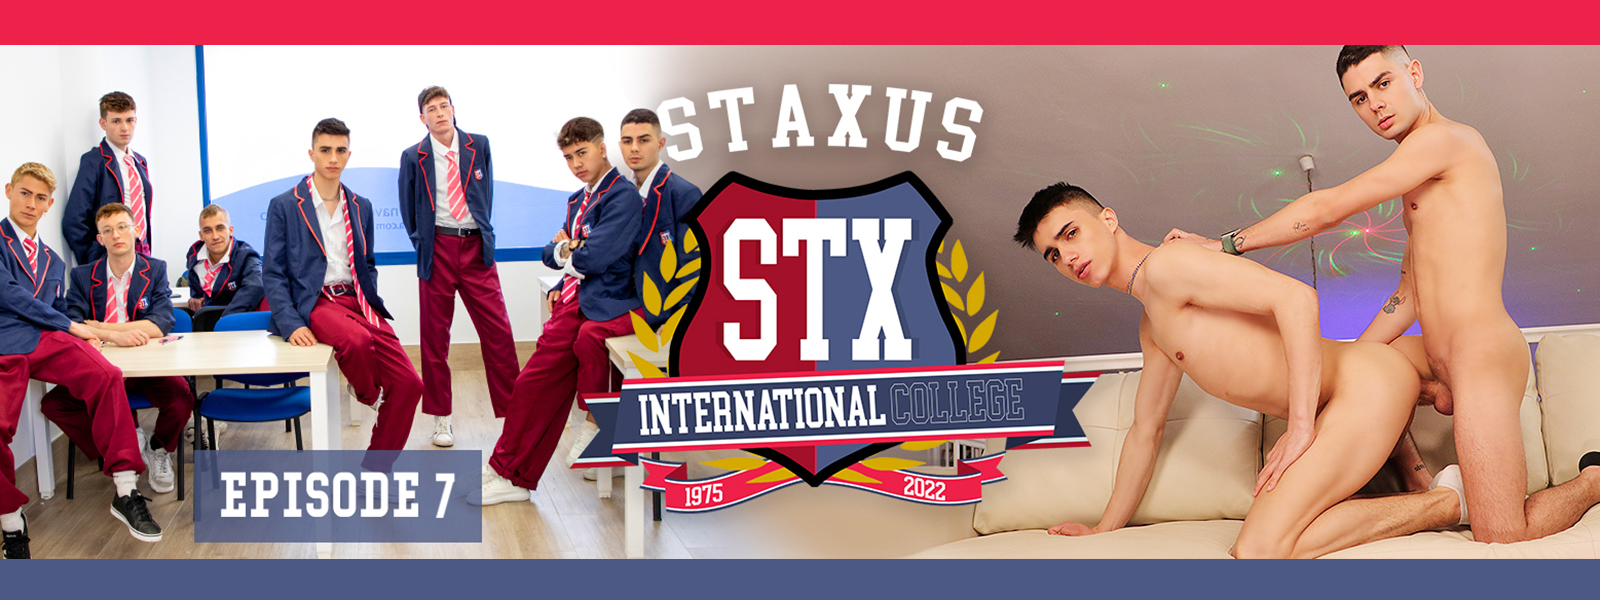 Staxus International College Episode 7